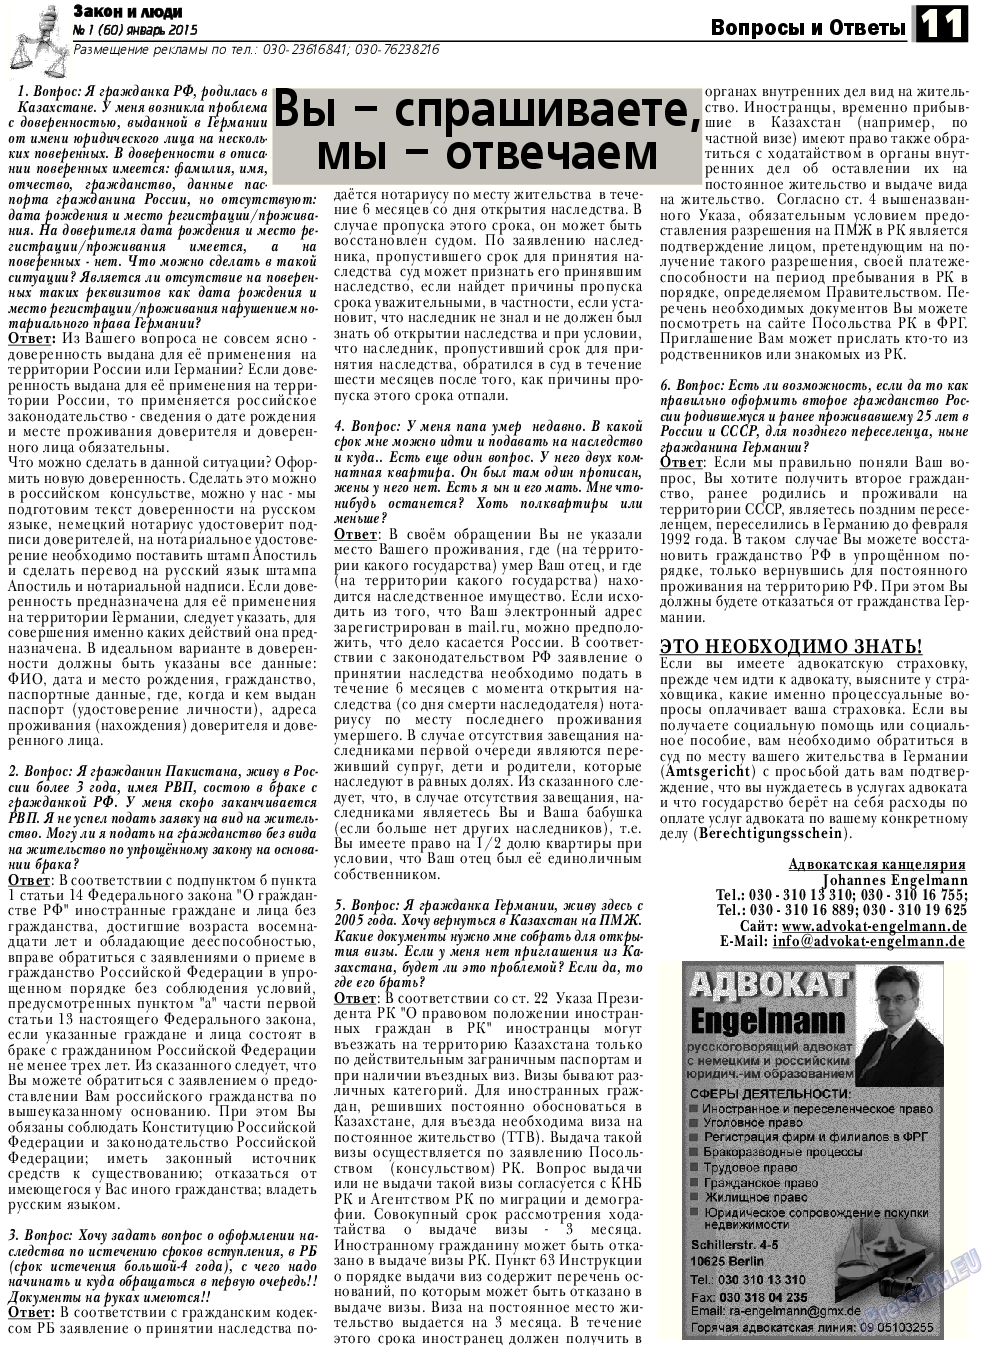 Закон и люди, газета. 2015 №1 стр.11